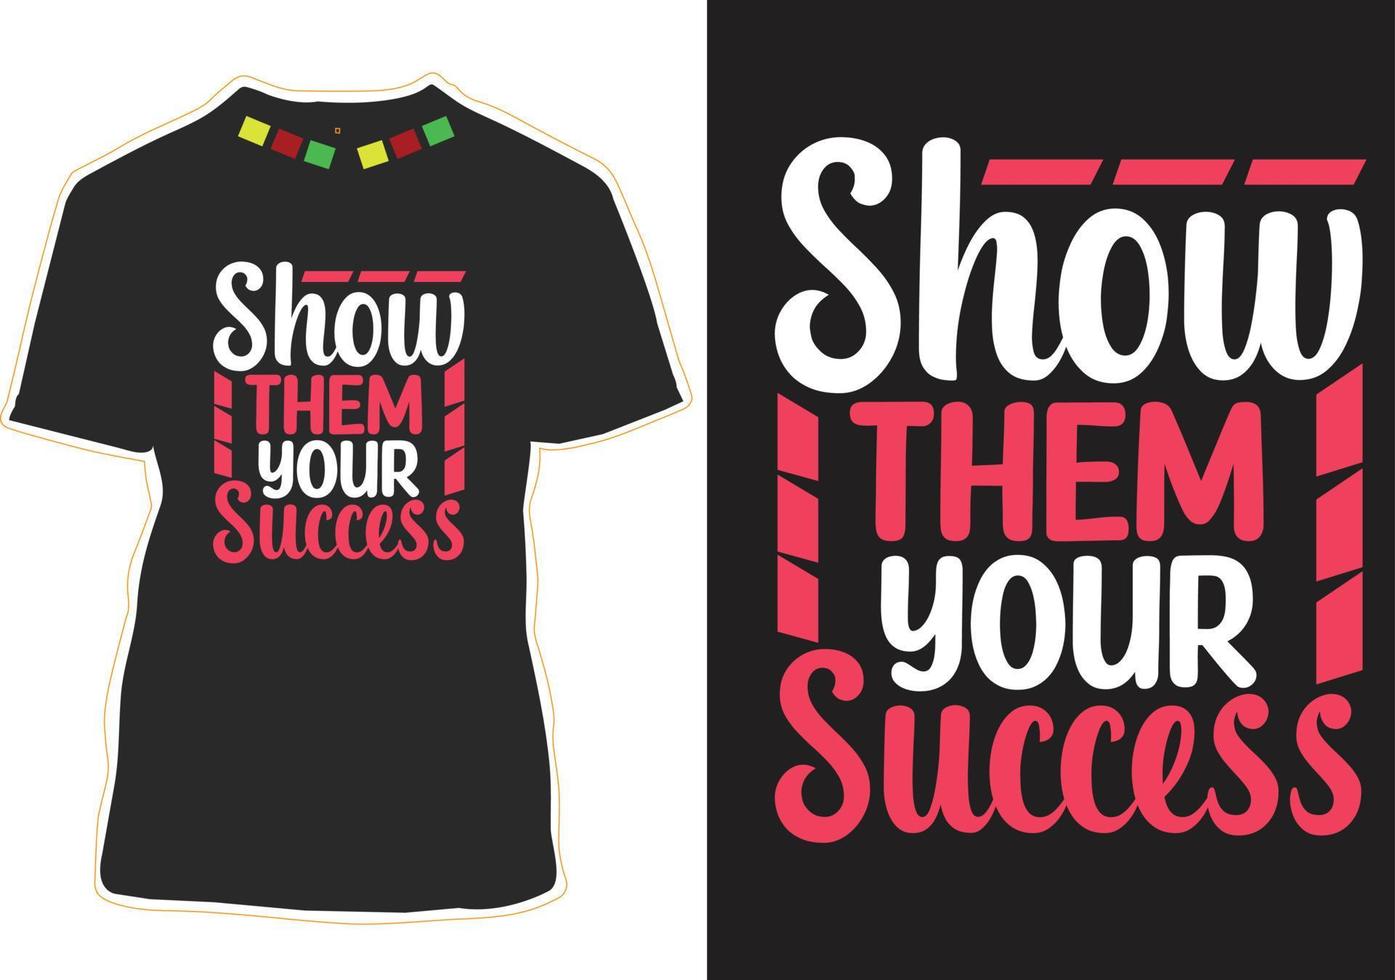 montrez-leur votre succès conception de t-shirt de citations de motivation vecteur